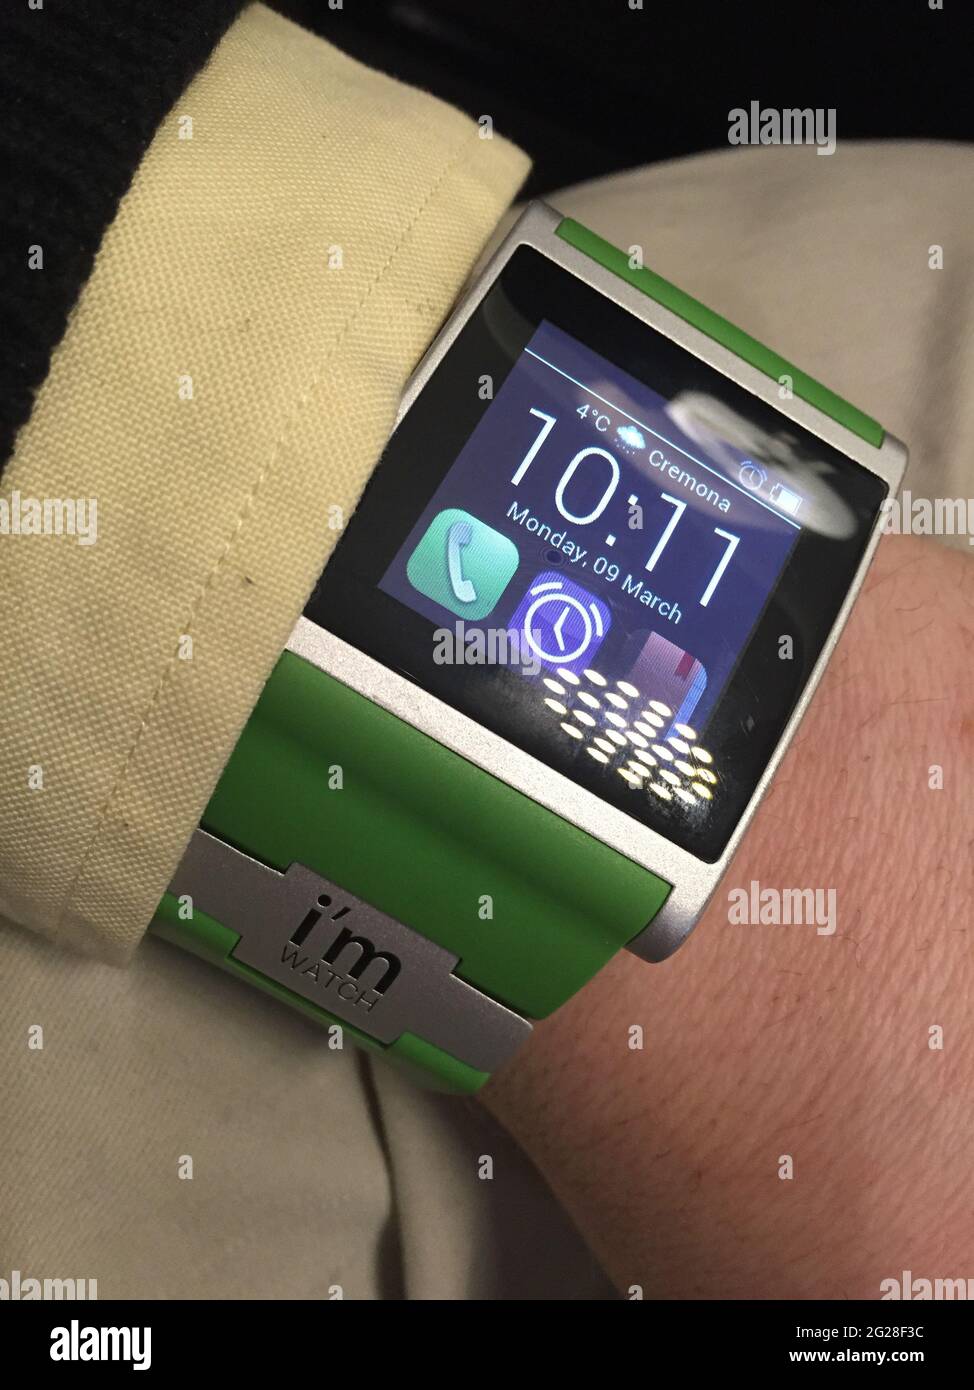 MAILAND, ITALIEN - 08. Jun 2021: Die i'm Watch ist eine Smartwatch, die vom italienischen Unternehmen i'm S.p.A. entwickelt wurde. Sie wurde von Manuel Zanella und Massimi konzipiert Stockfoto